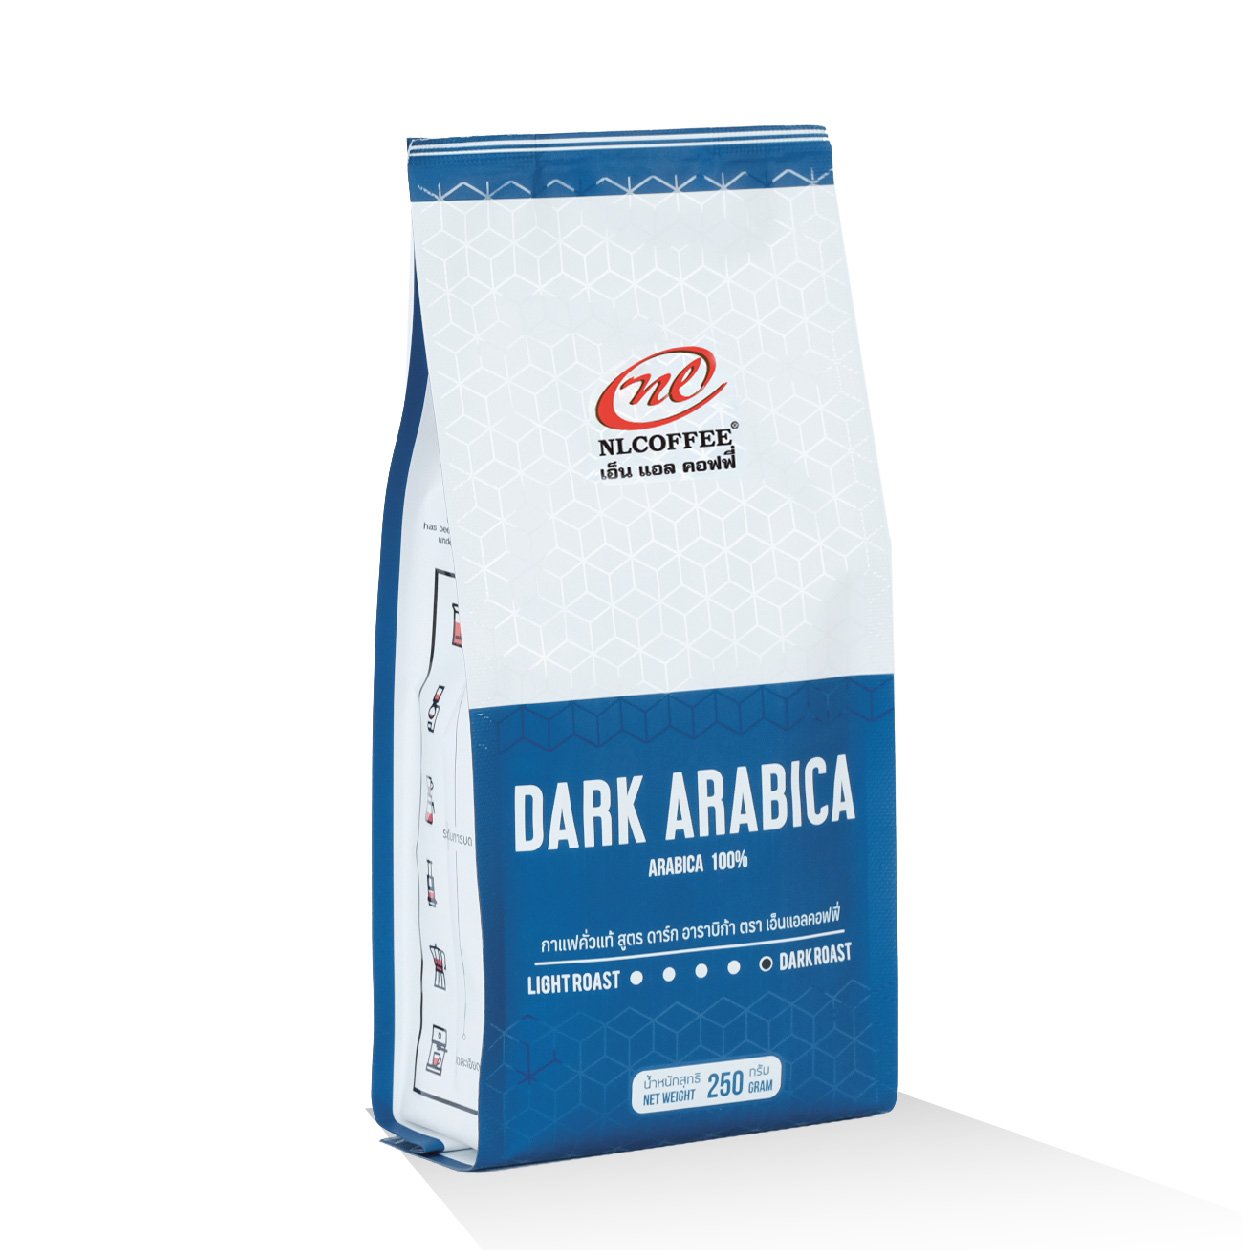 Dark Arabica | ดาร์ก อาราบิก้า